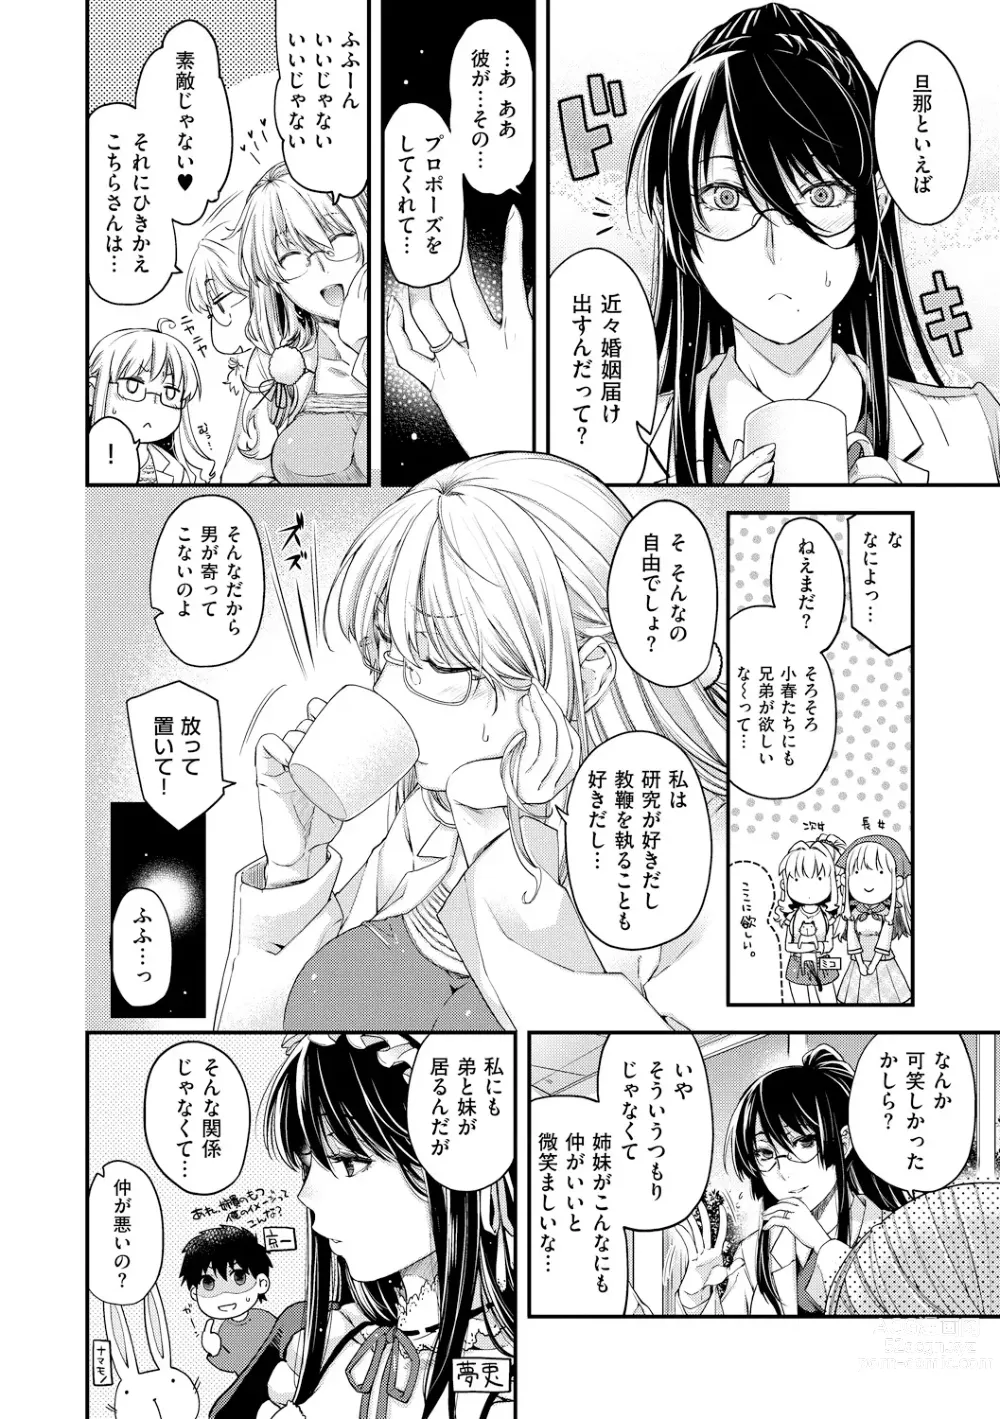 Page 214 of manga Chigiri to Musubi no Houteishiki